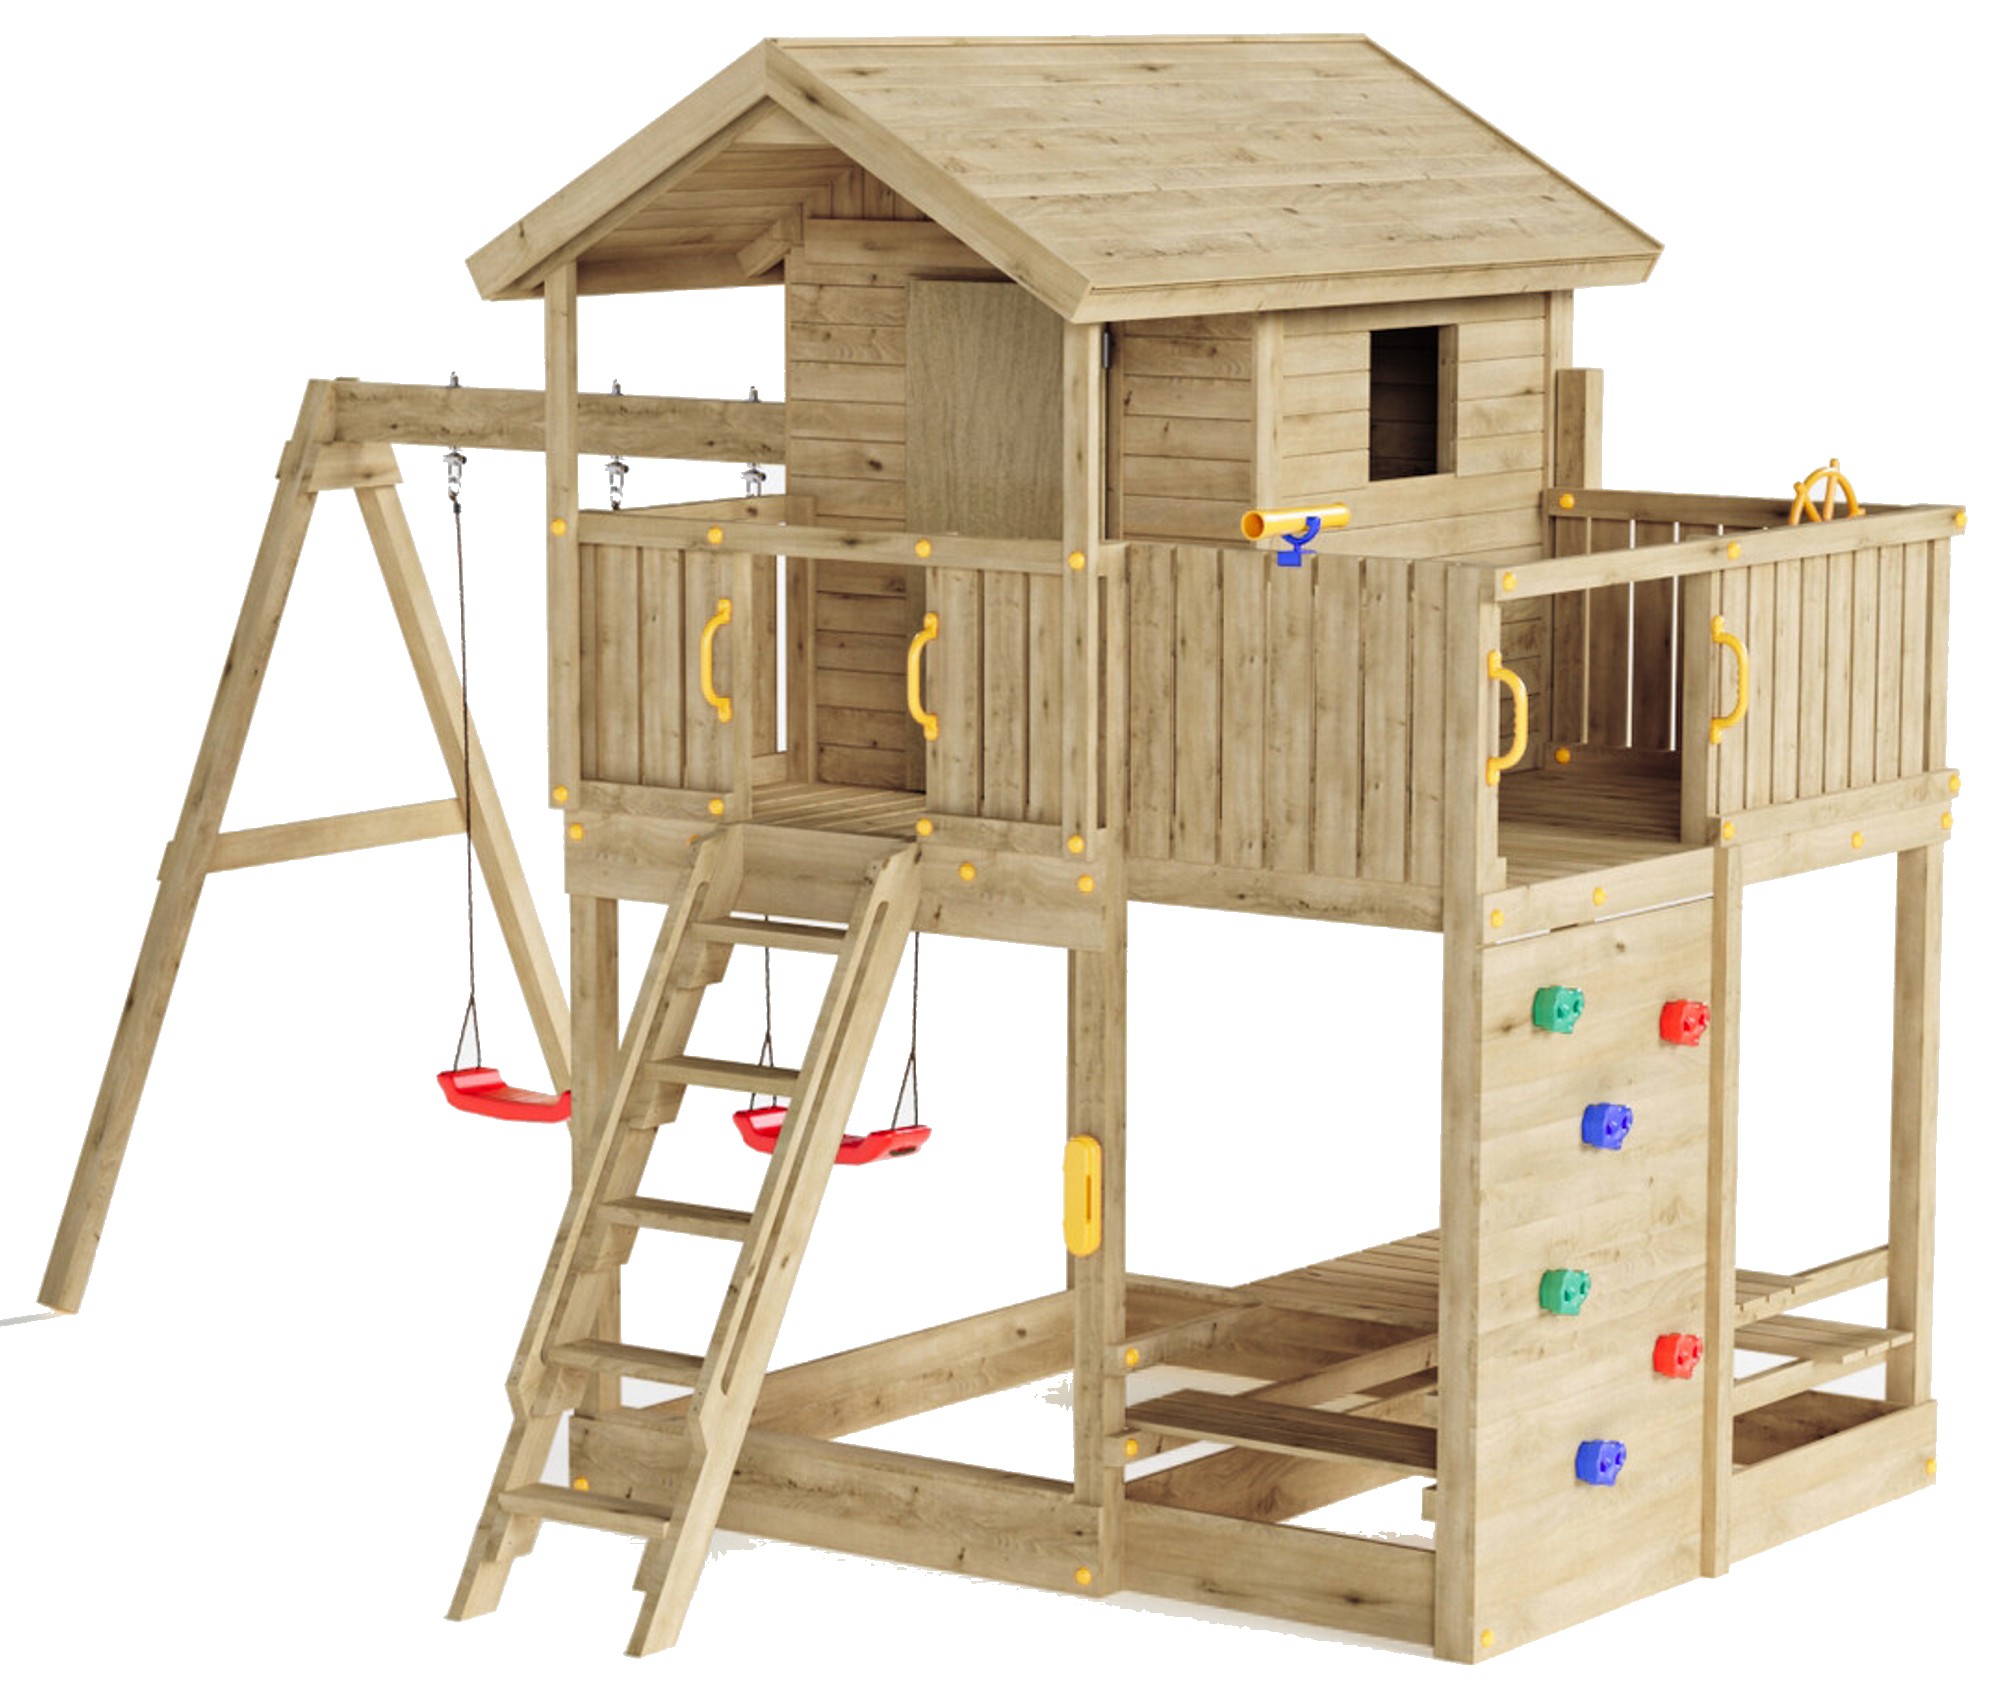 Plac zabaw drewniany ogrodowy Galaxy Moonlight KDI domek, 2x hutawka, piaskownica, st piknikowy, cianka wspinaczkowa, drabinka